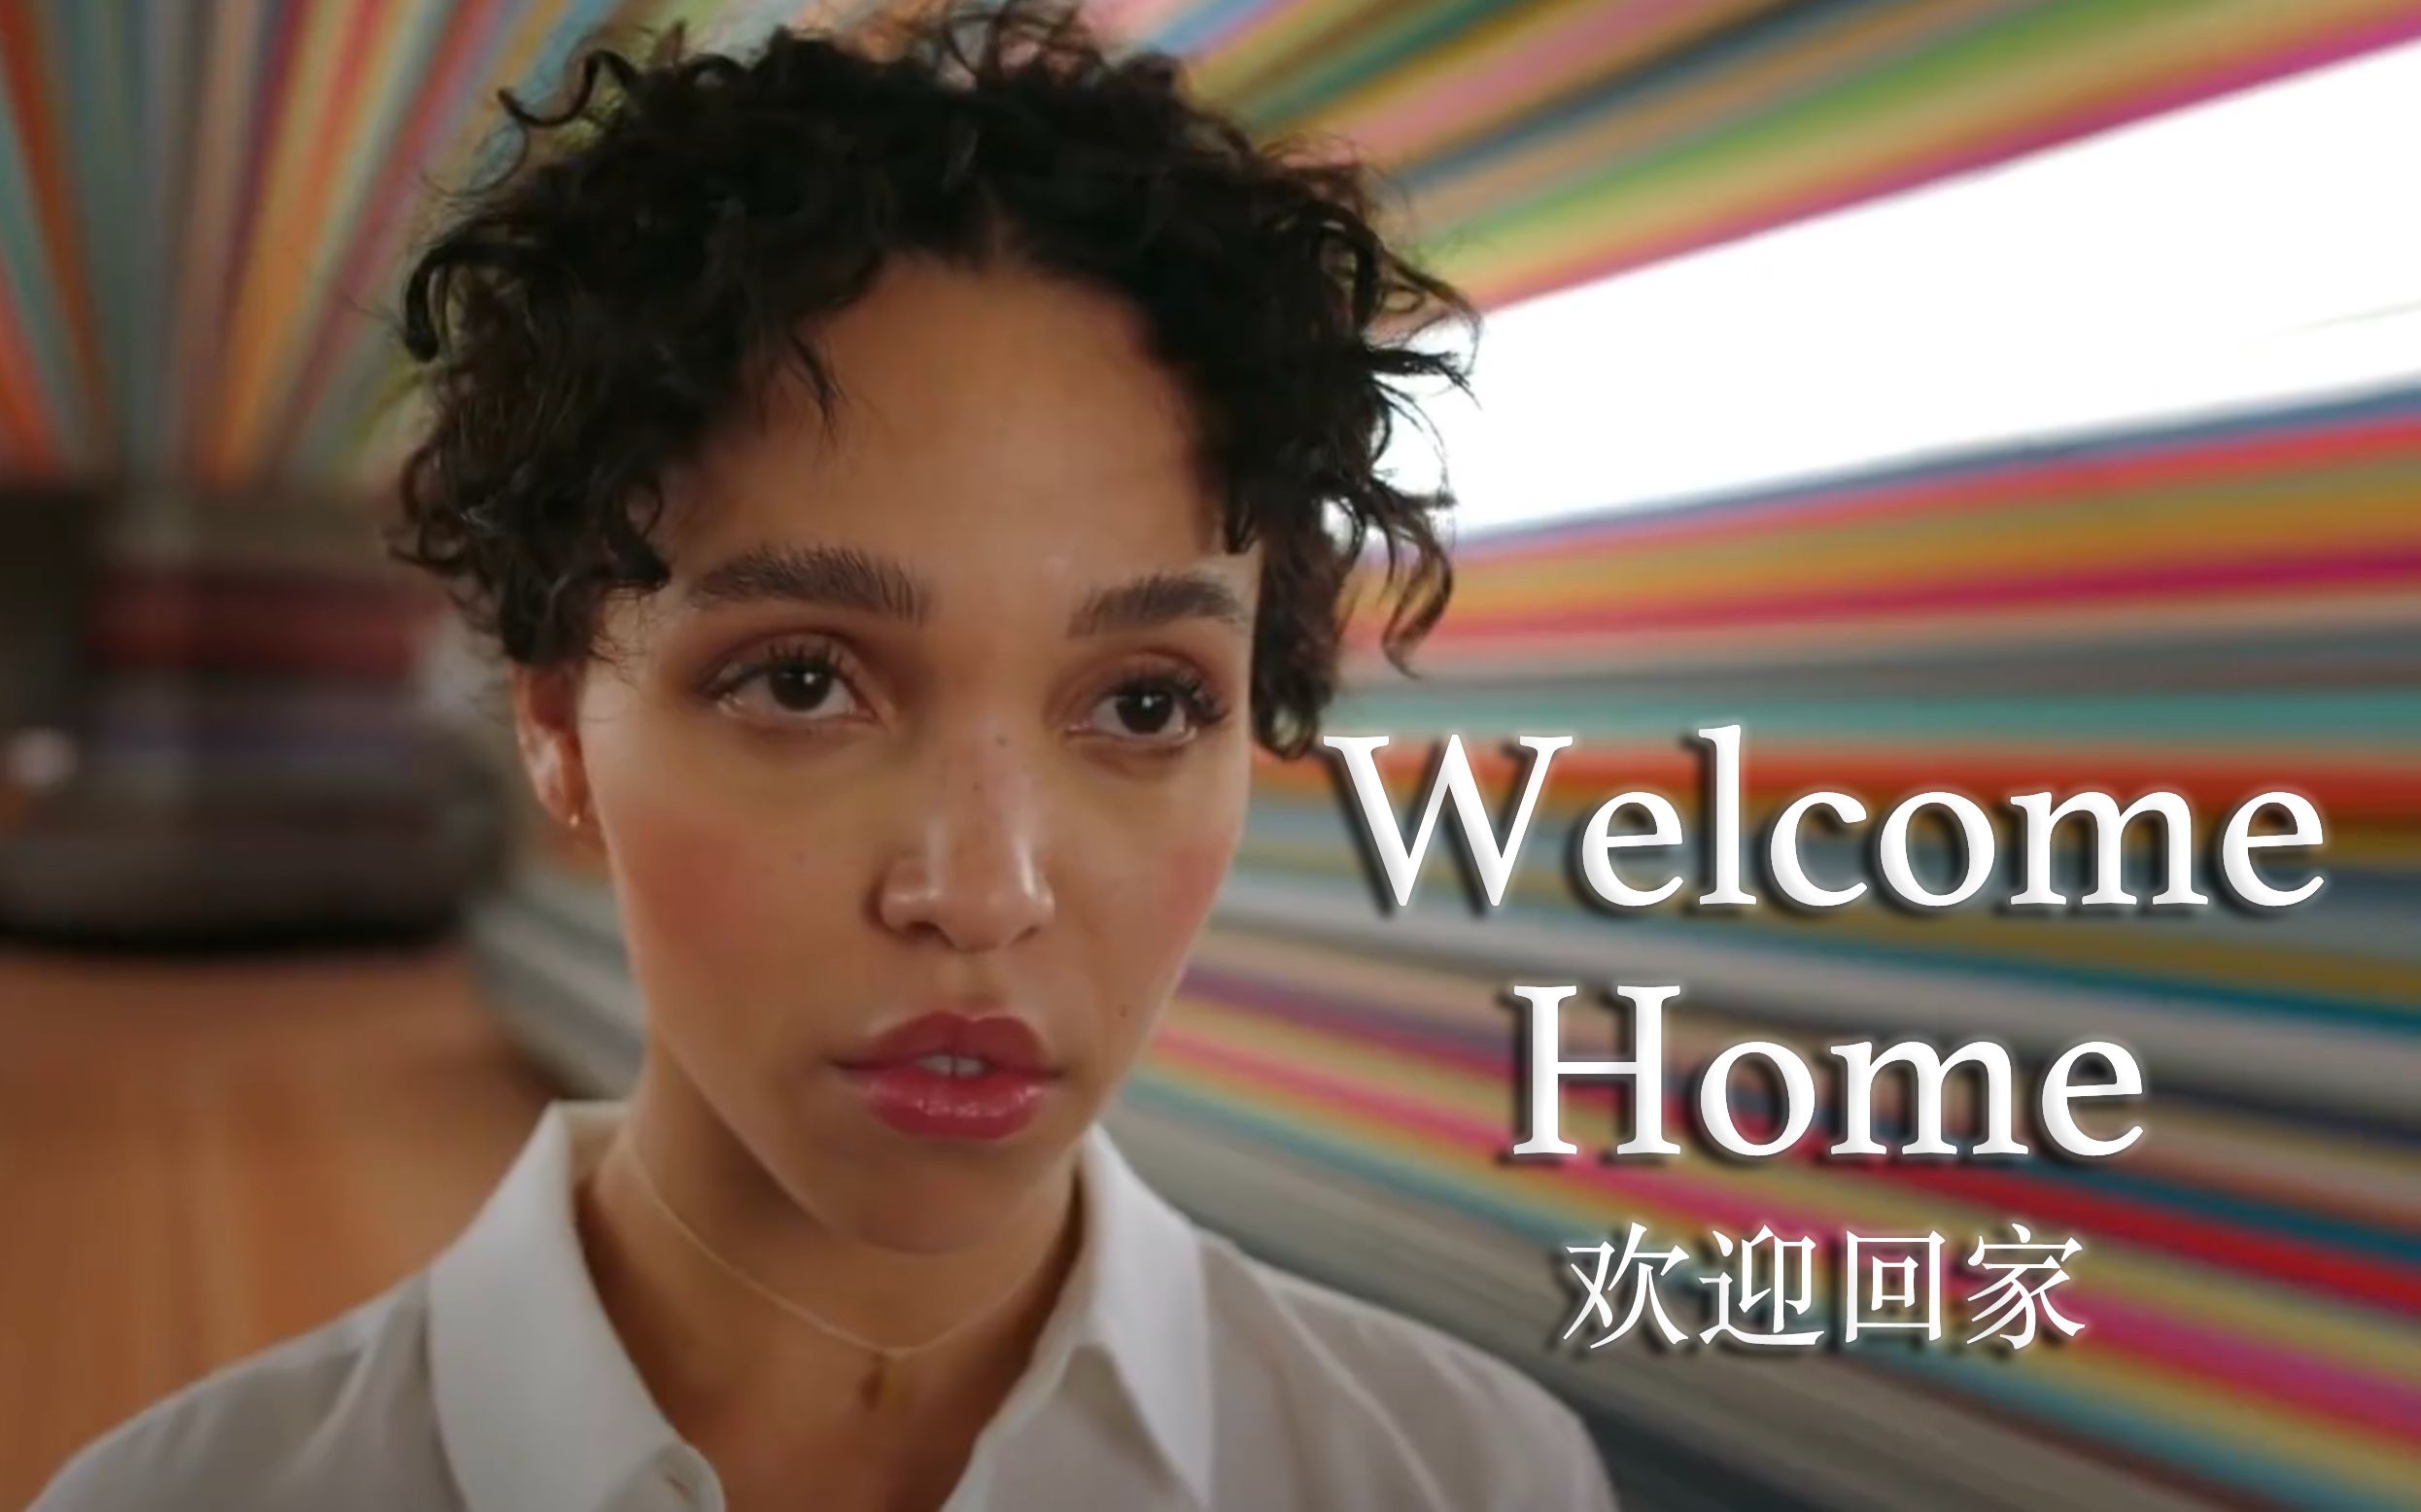 至今为止最喜欢&最惊艳的苹果广告——《欢迎回家Welcome Home》